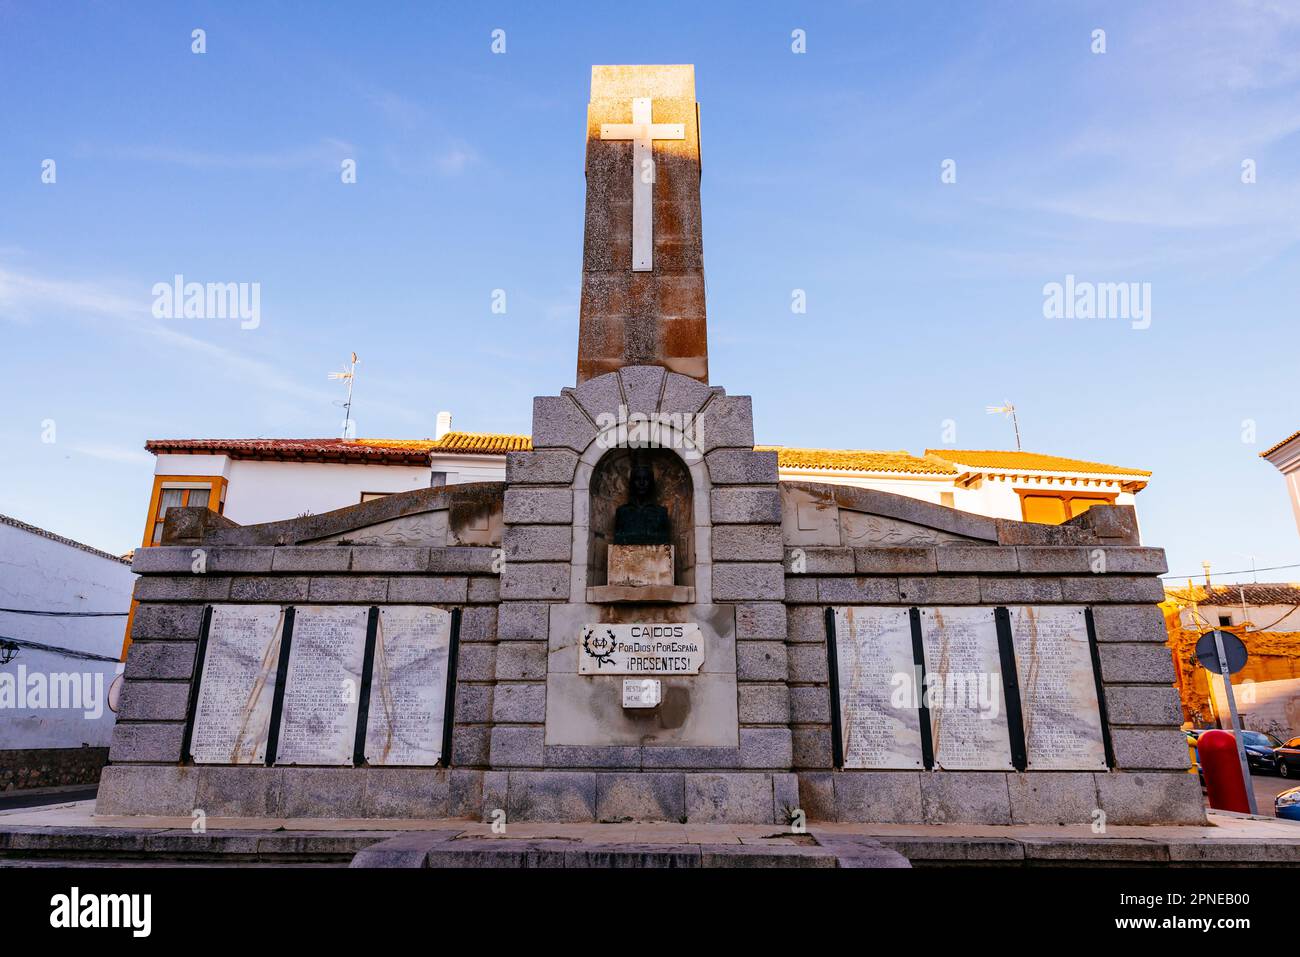 Monument aux morts pour l'Espagne de la dictature franquiste. Ocaña, Tolède, Castilla la Mancha, Espagne, Europe Banque D'Images